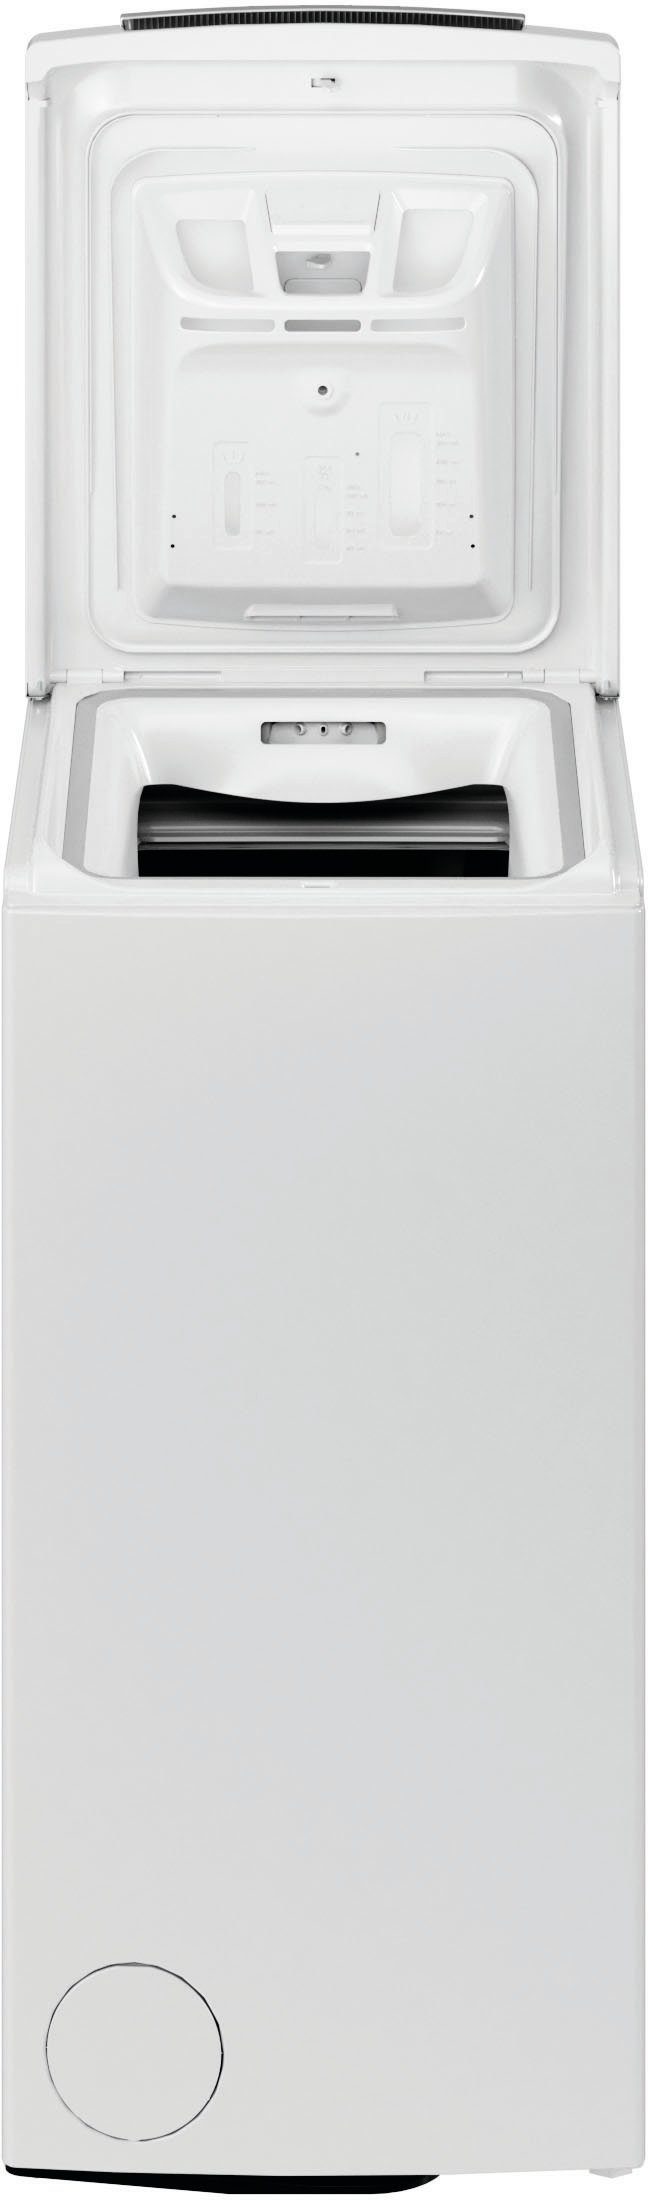 BAUKNECHT Waschmaschine Toplader U/min, CC, 6,5 Jahre 4 1200 6513 WMT Herstellergarantie kg